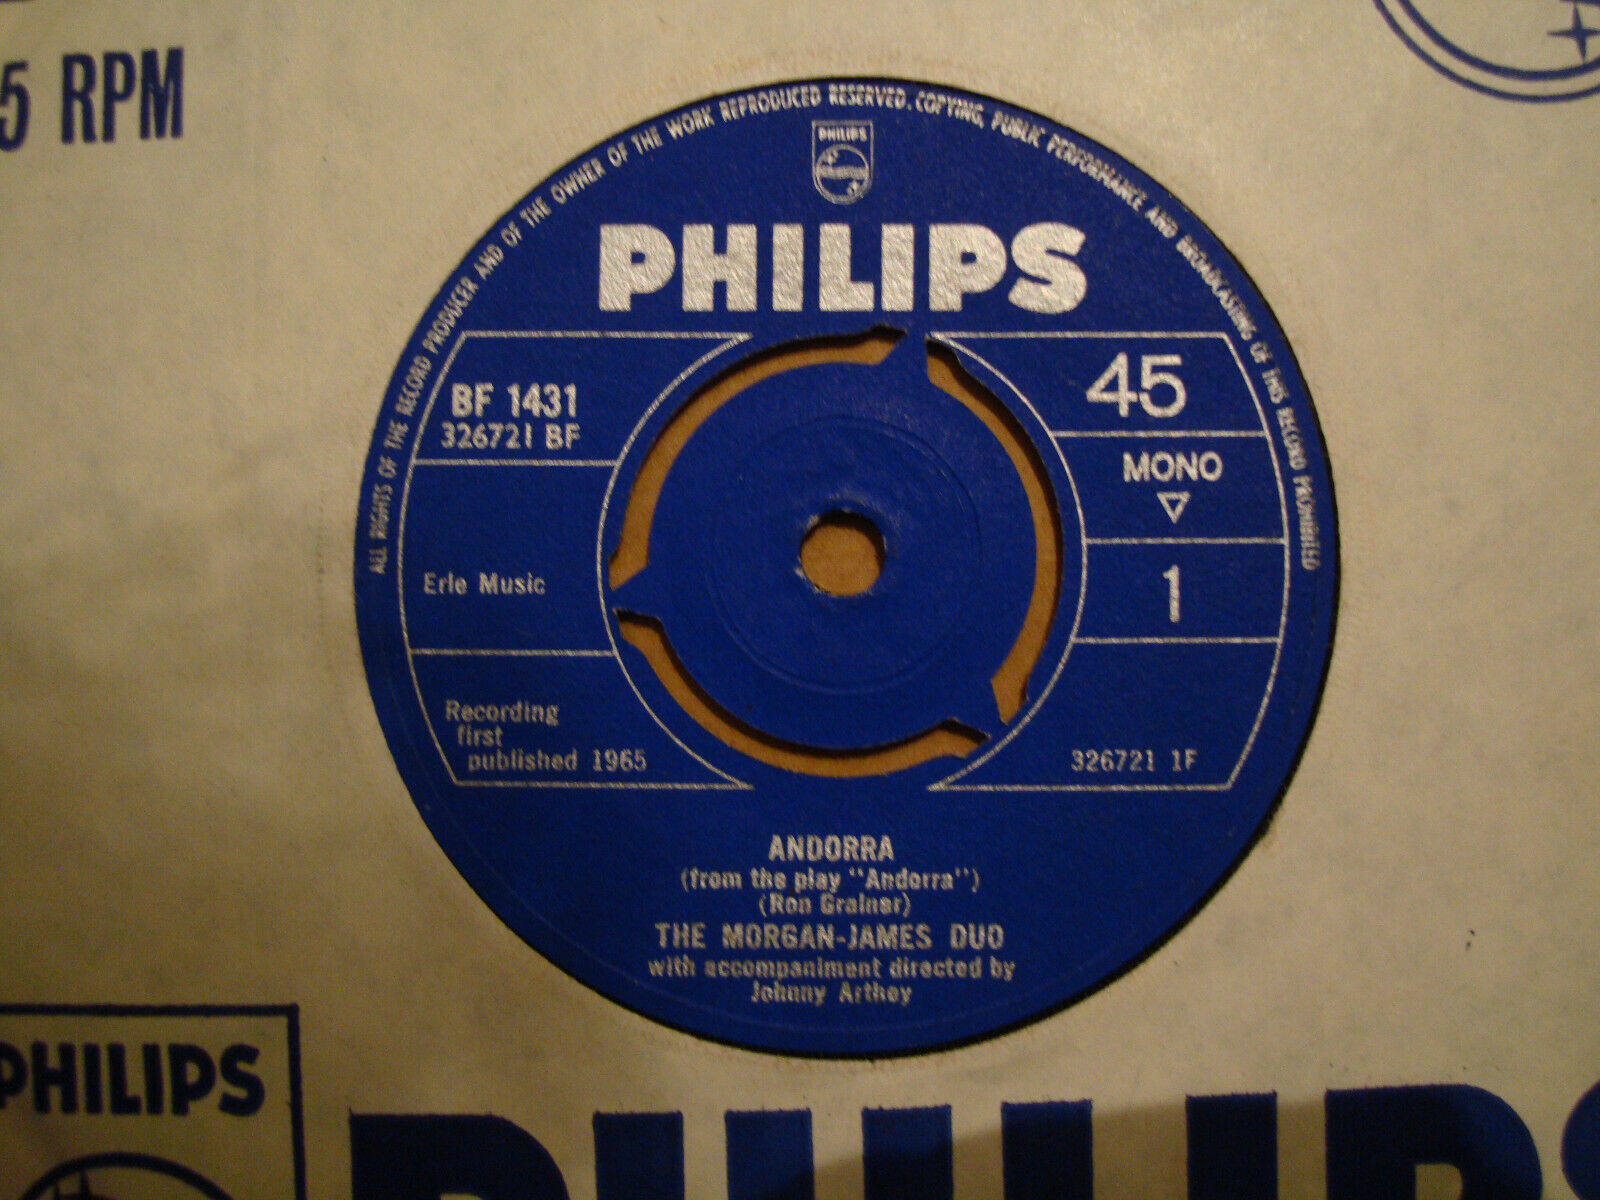 THE MORGAN-JAMES DUO,  ANDORRA,  PHILIPS RECORDS 1965 EX+